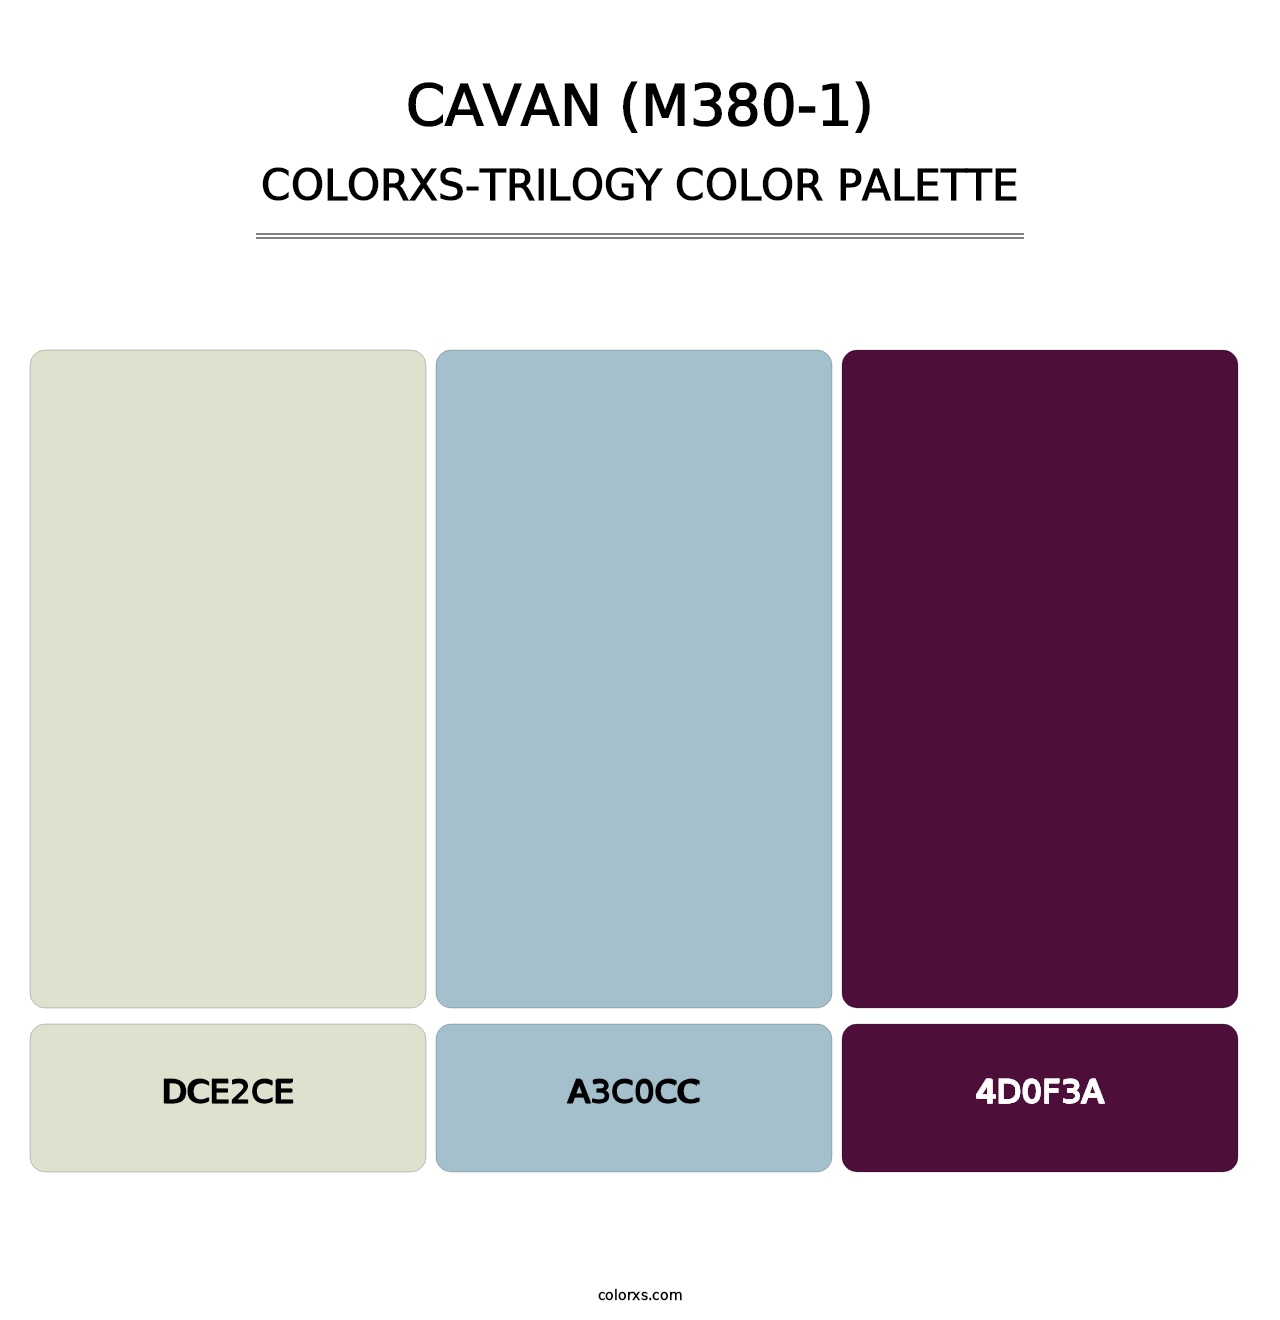 Cavan (M380-1) - Colorxs Trilogy Palette